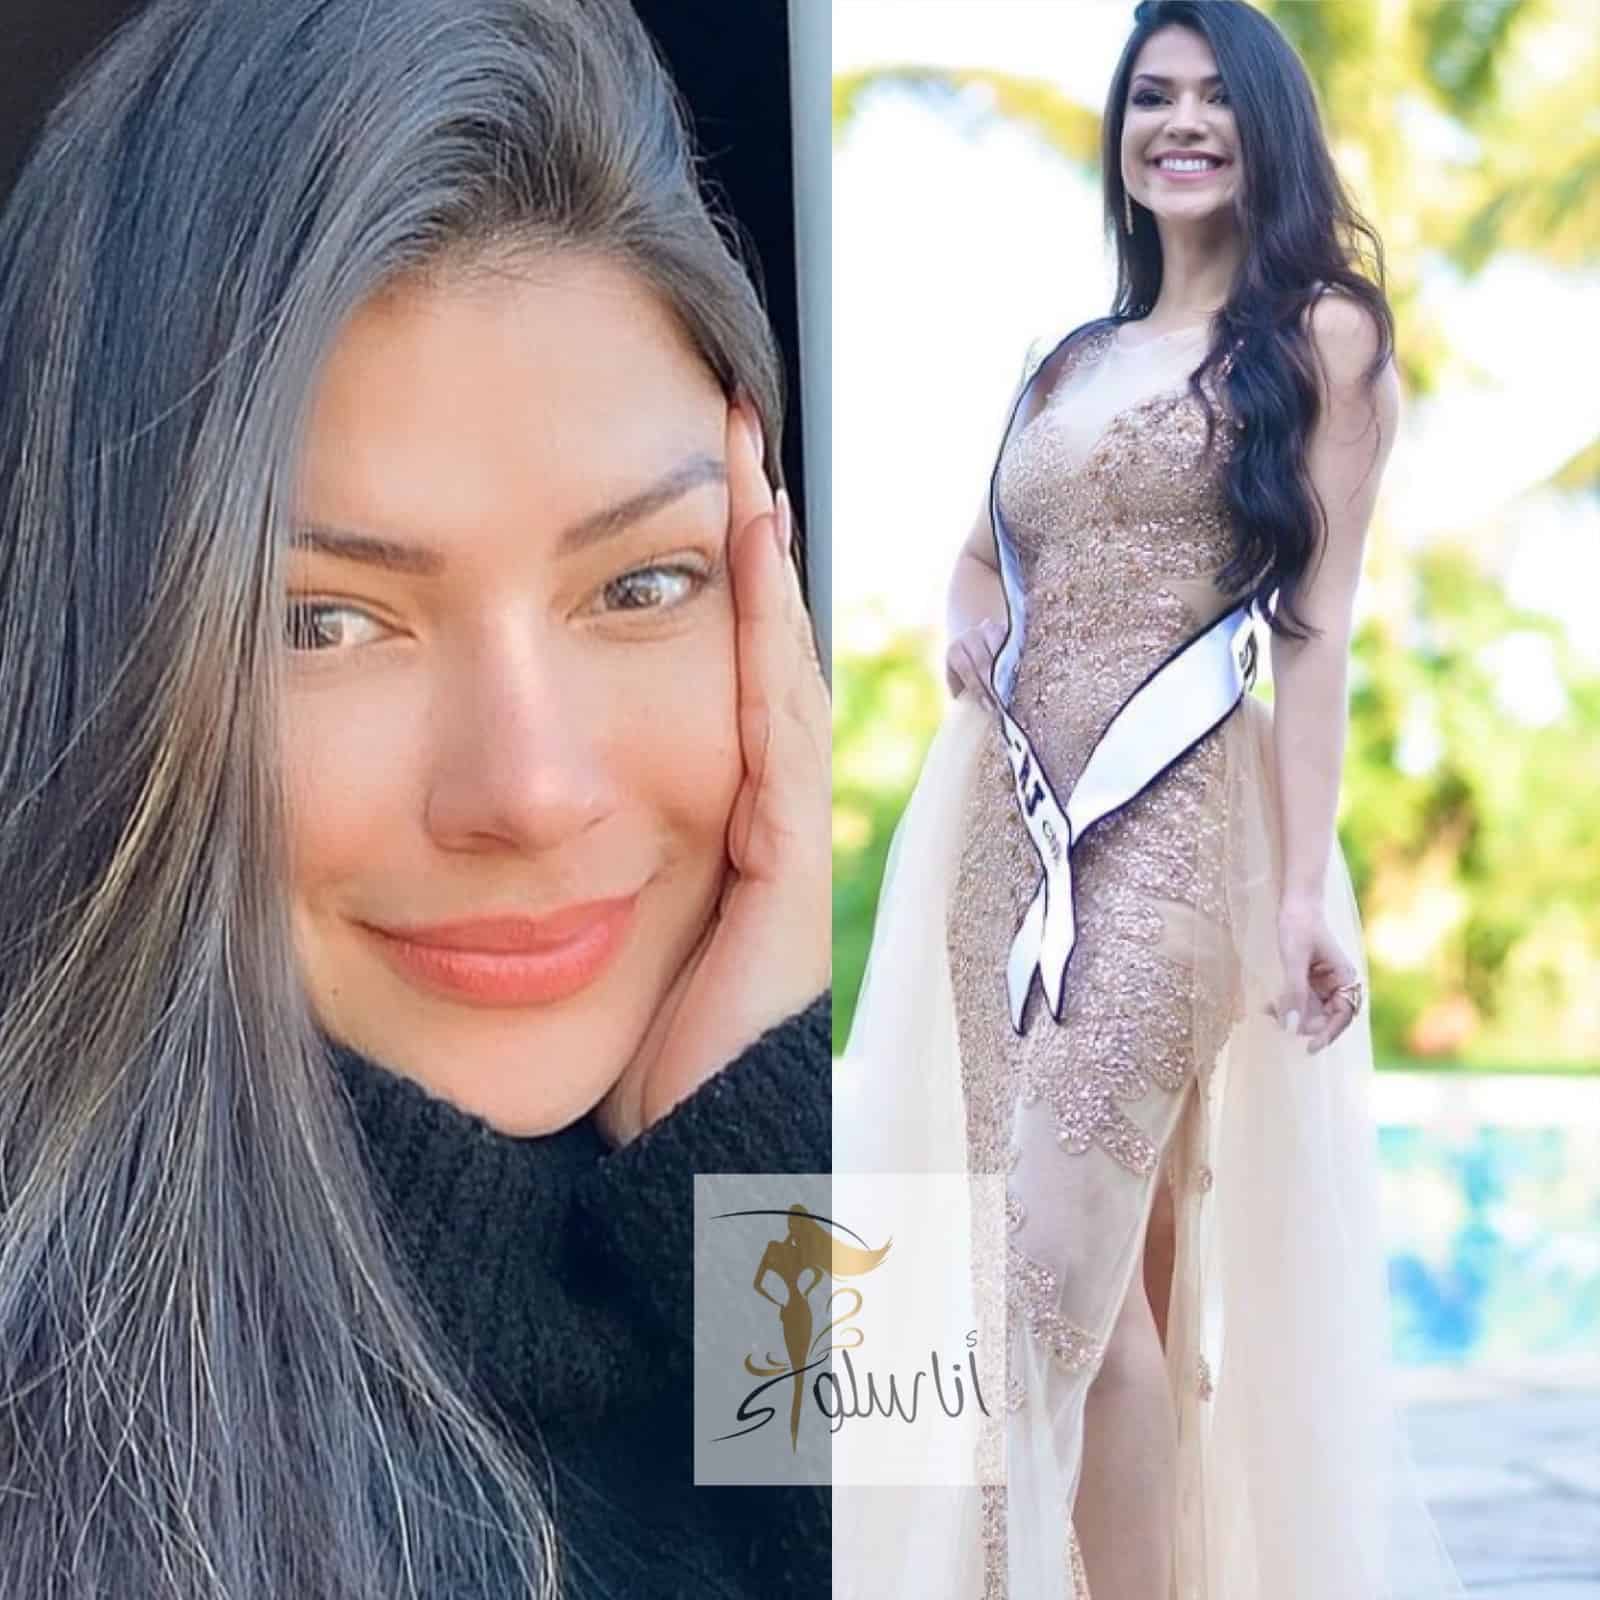 Gliese Correa, Miss Brasilien